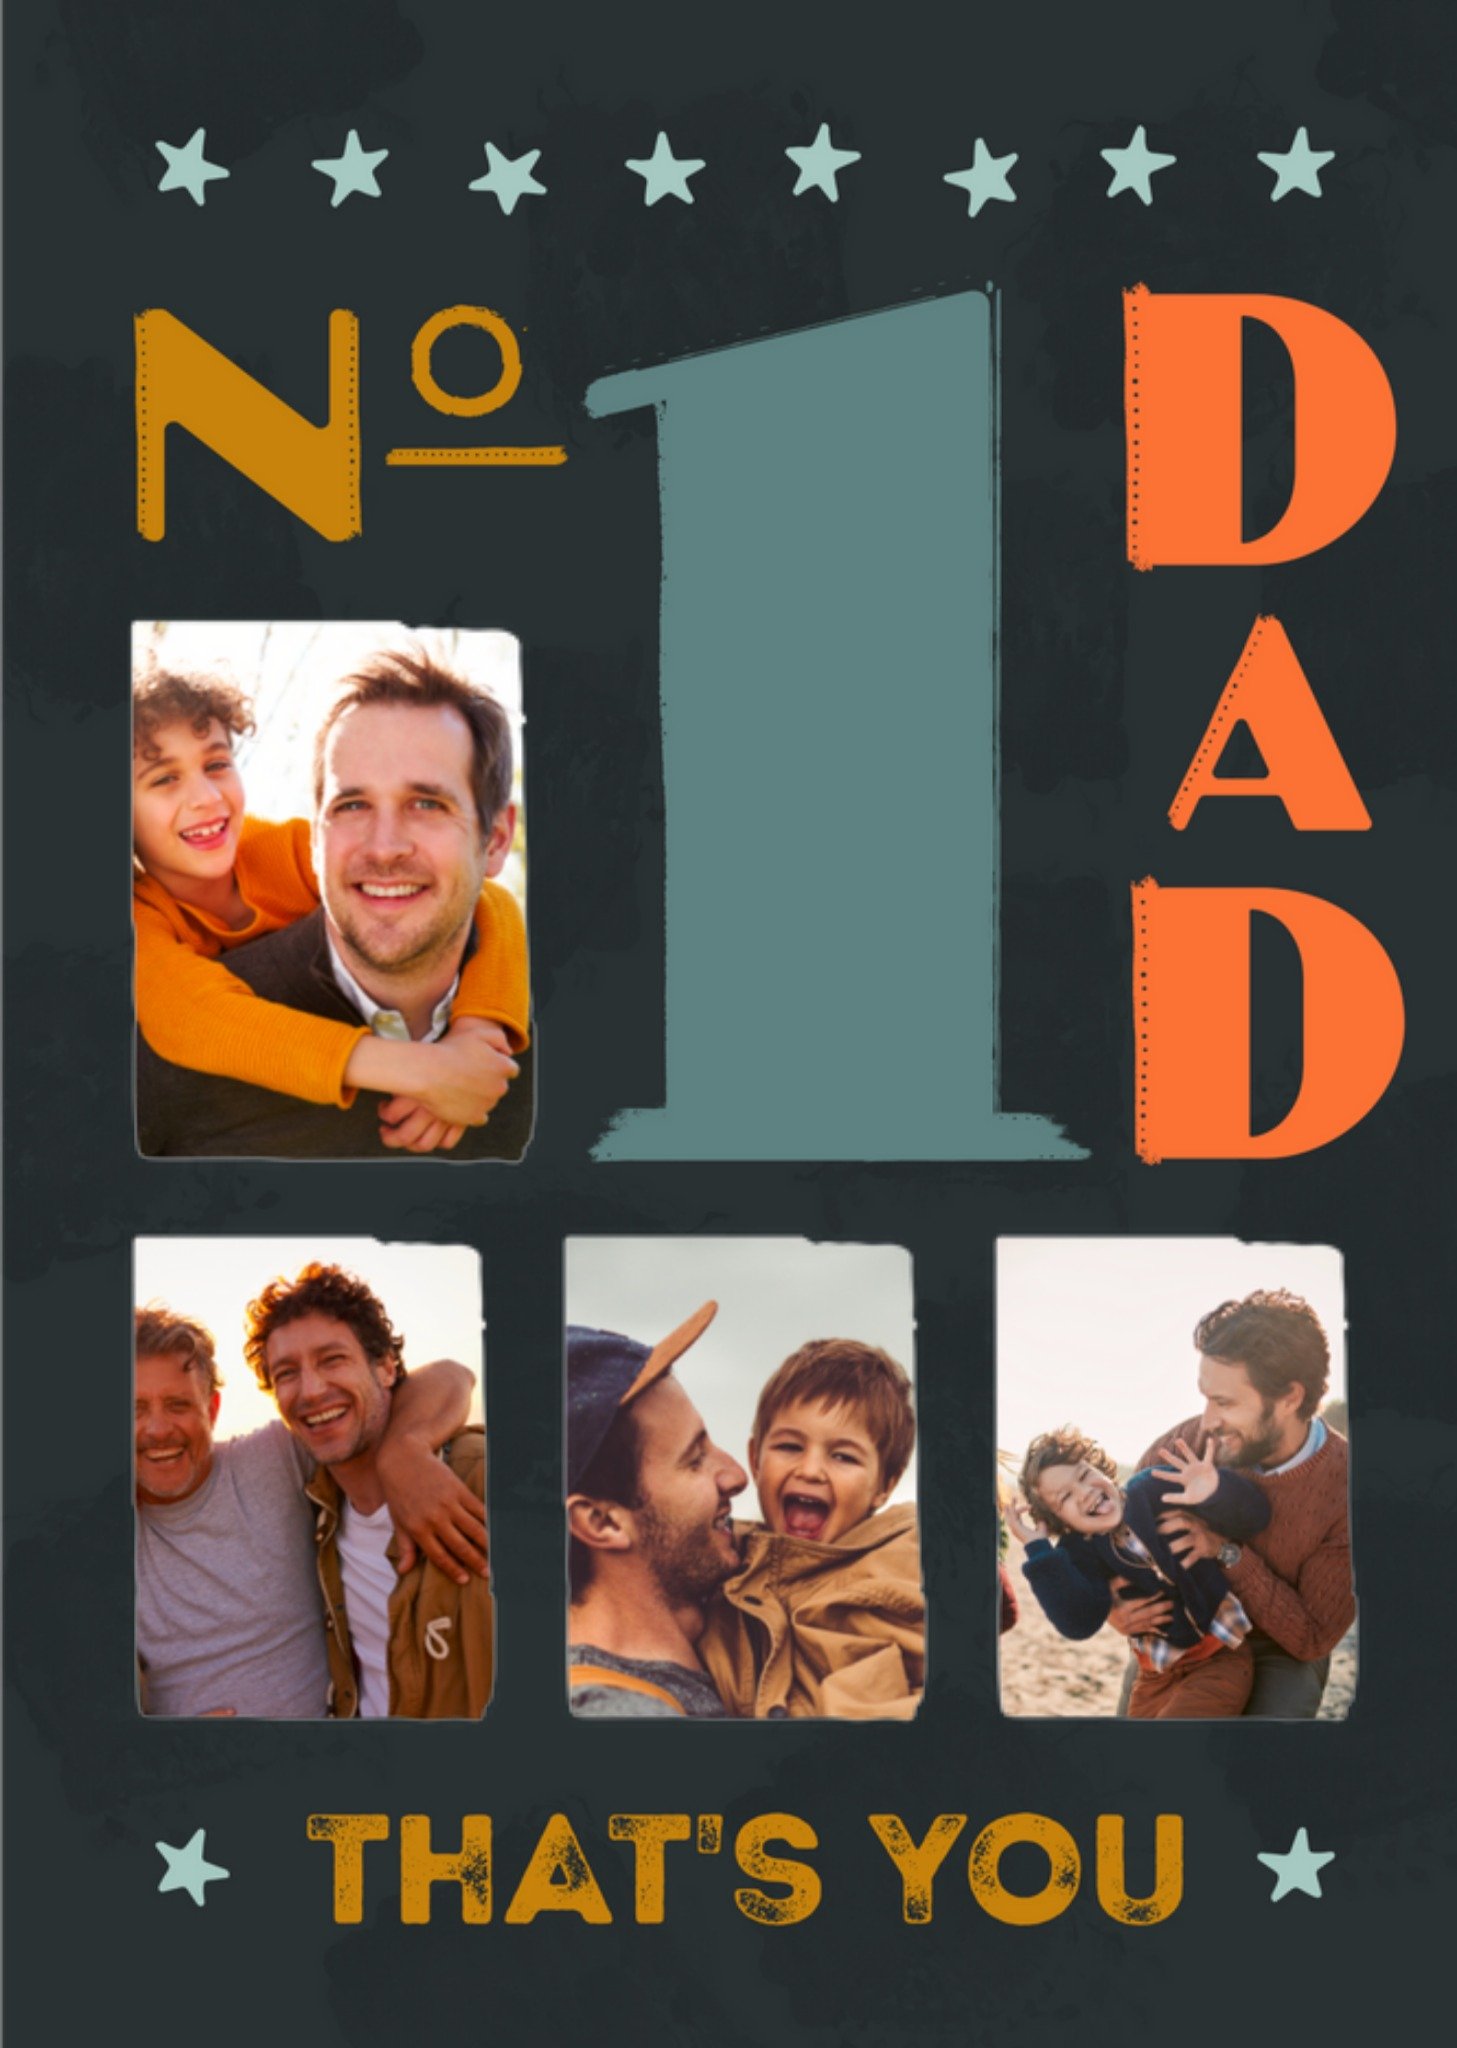 Vaderdagkaart - No 1 Dad